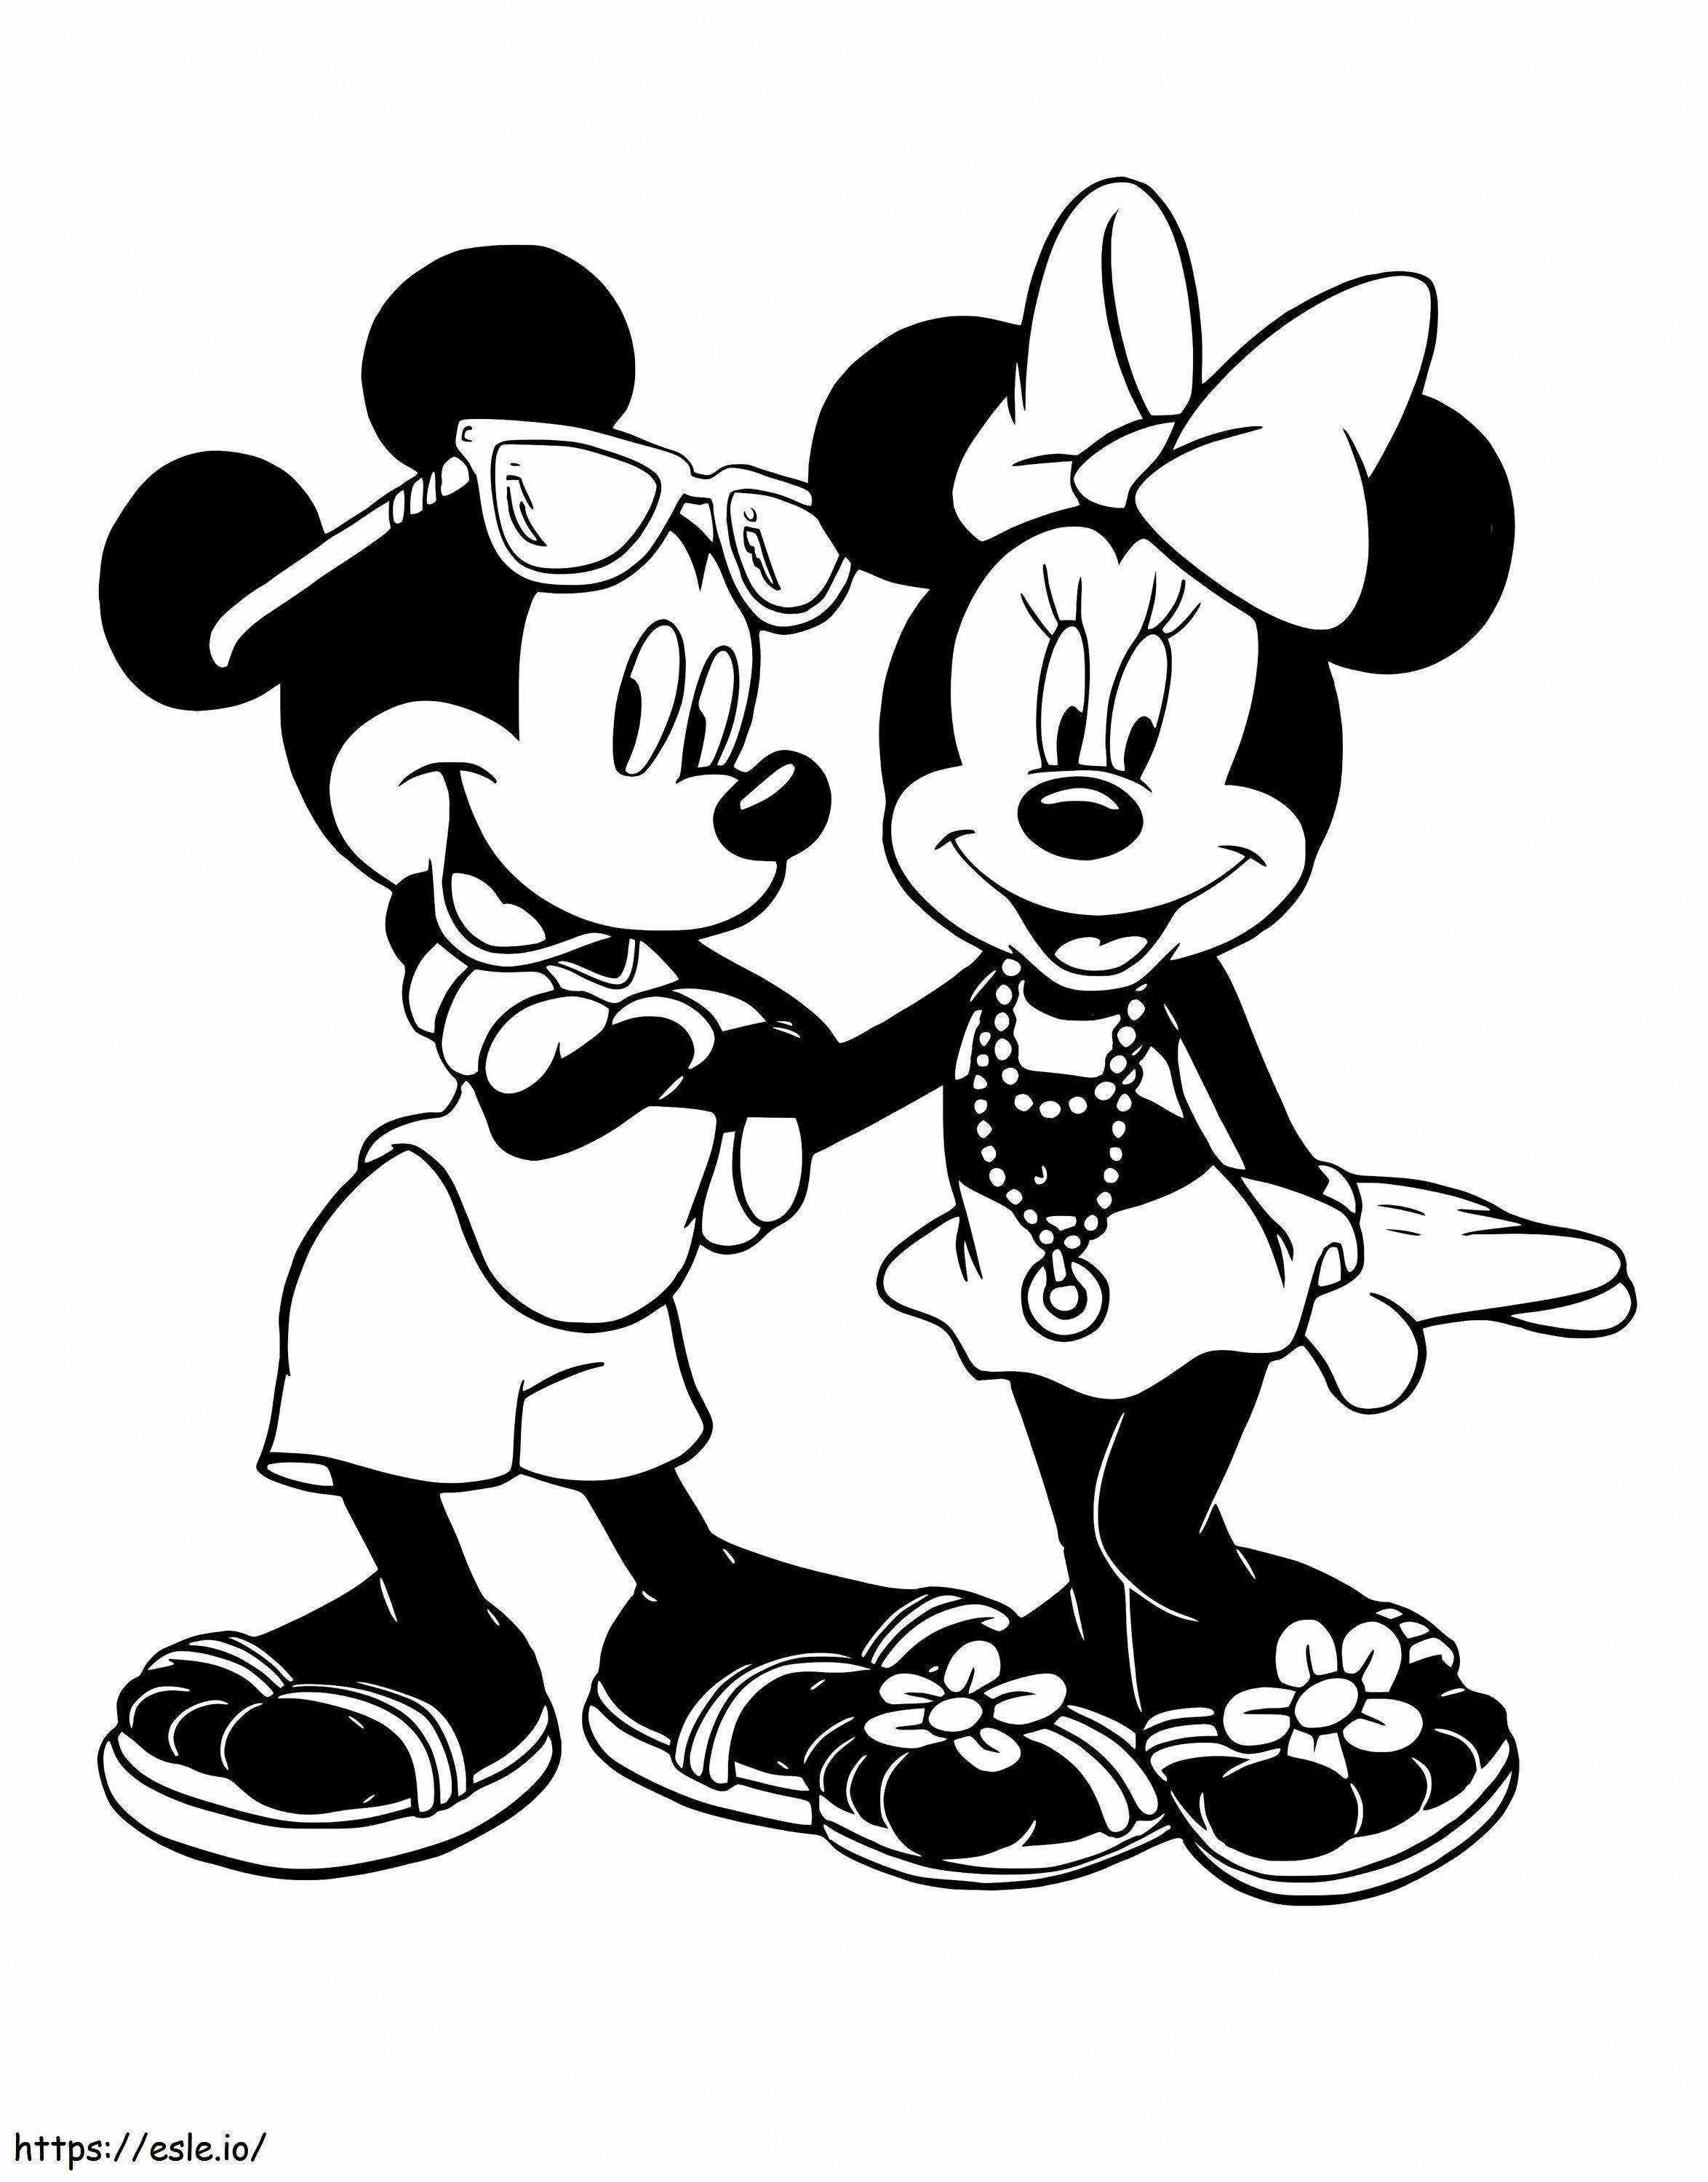 Gran Topolino e Minnie Mouse da colorare